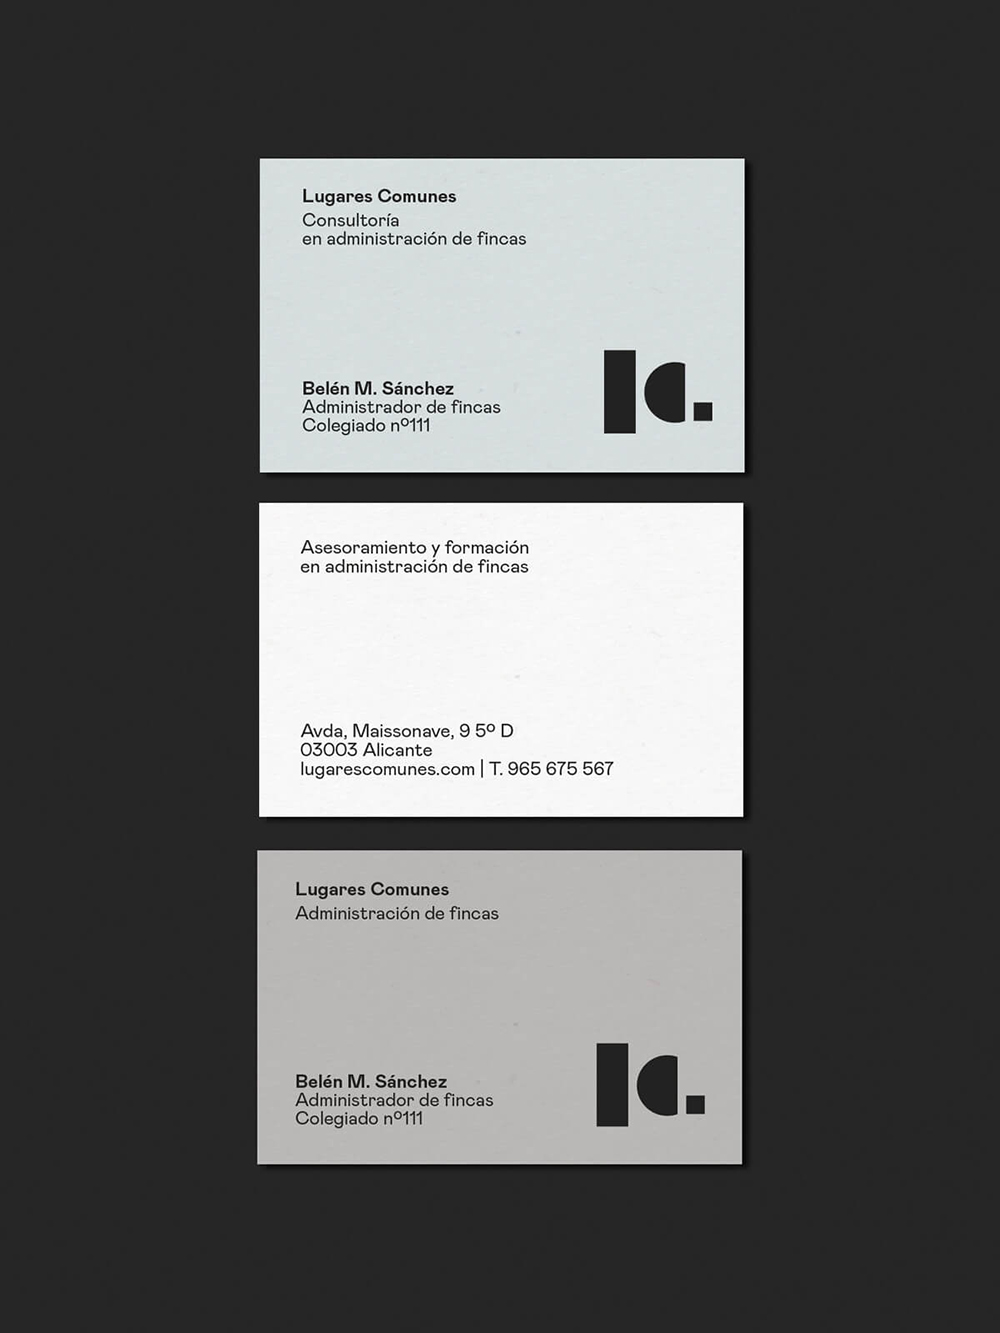 Diseño y desarrollo de identidad visual corporativa para Lugares Comunes. Versiones tarjeta de visita.